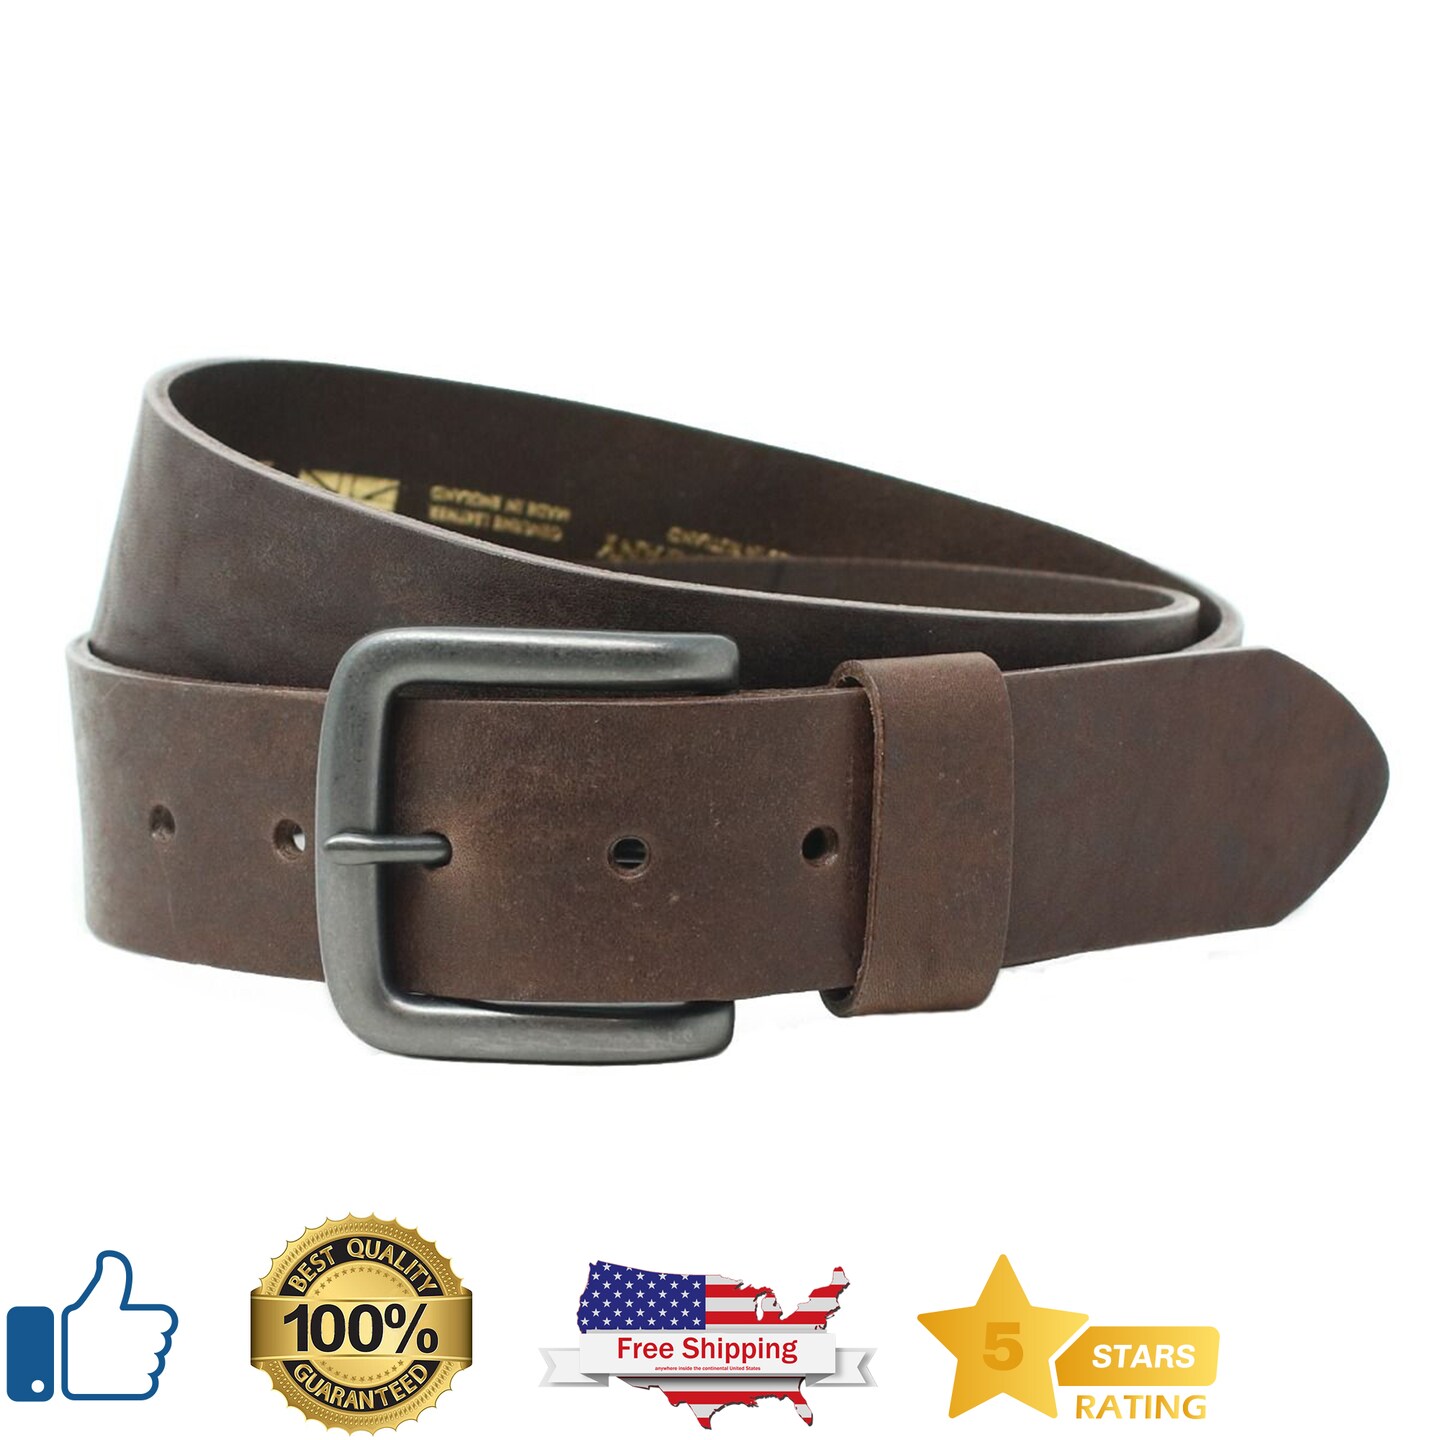 Sturdy Elegant Leather Belt Premium Premium